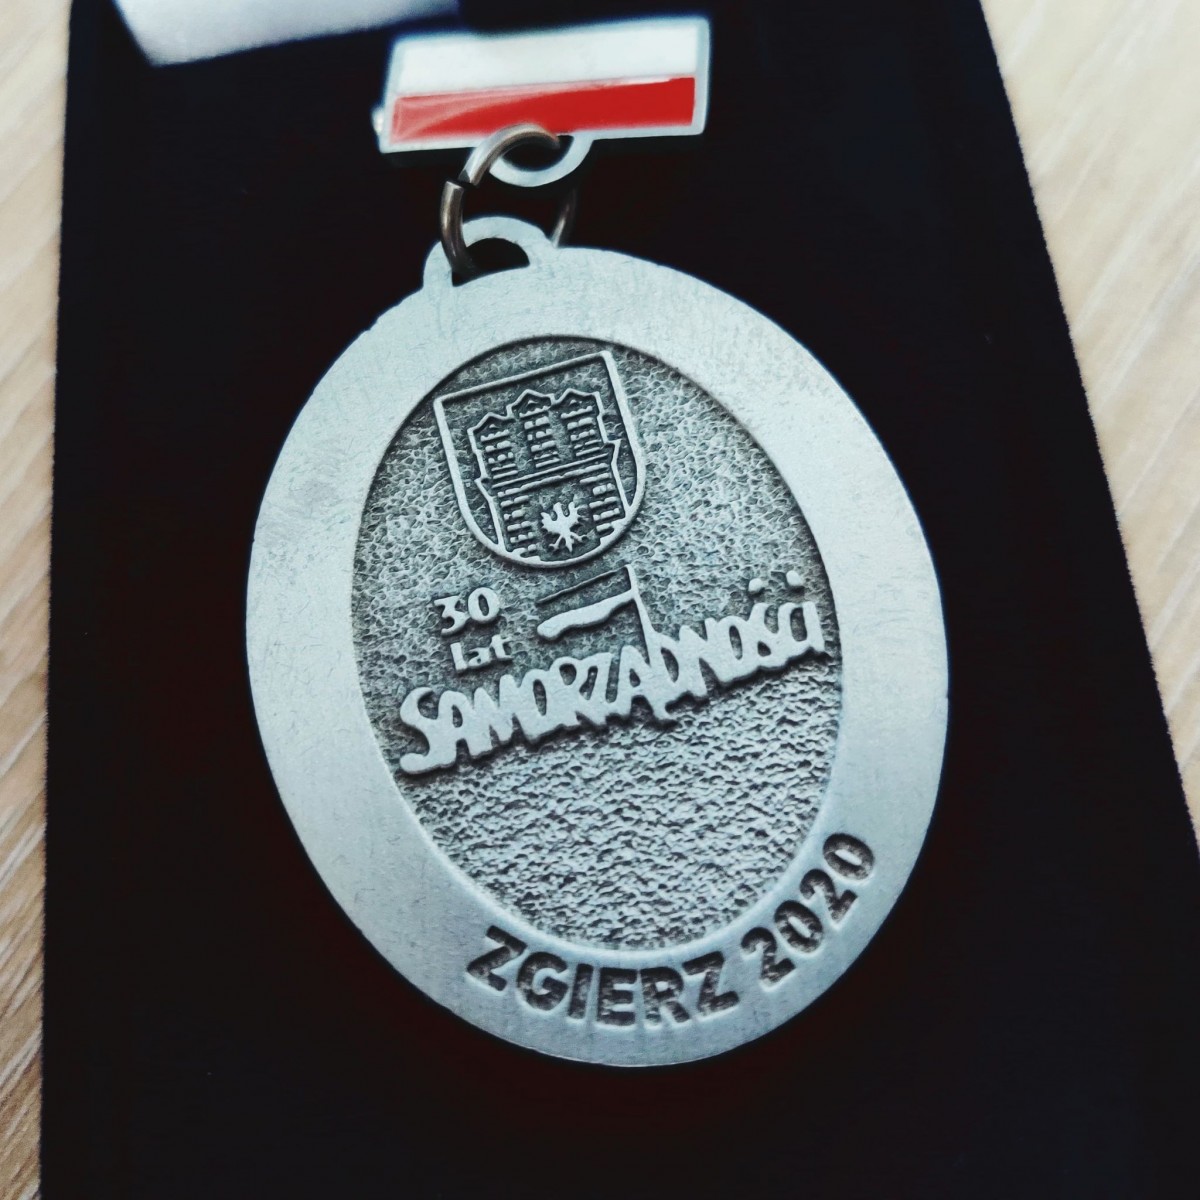 awers Zgierskiego Medalu - 30 lat Samorządności